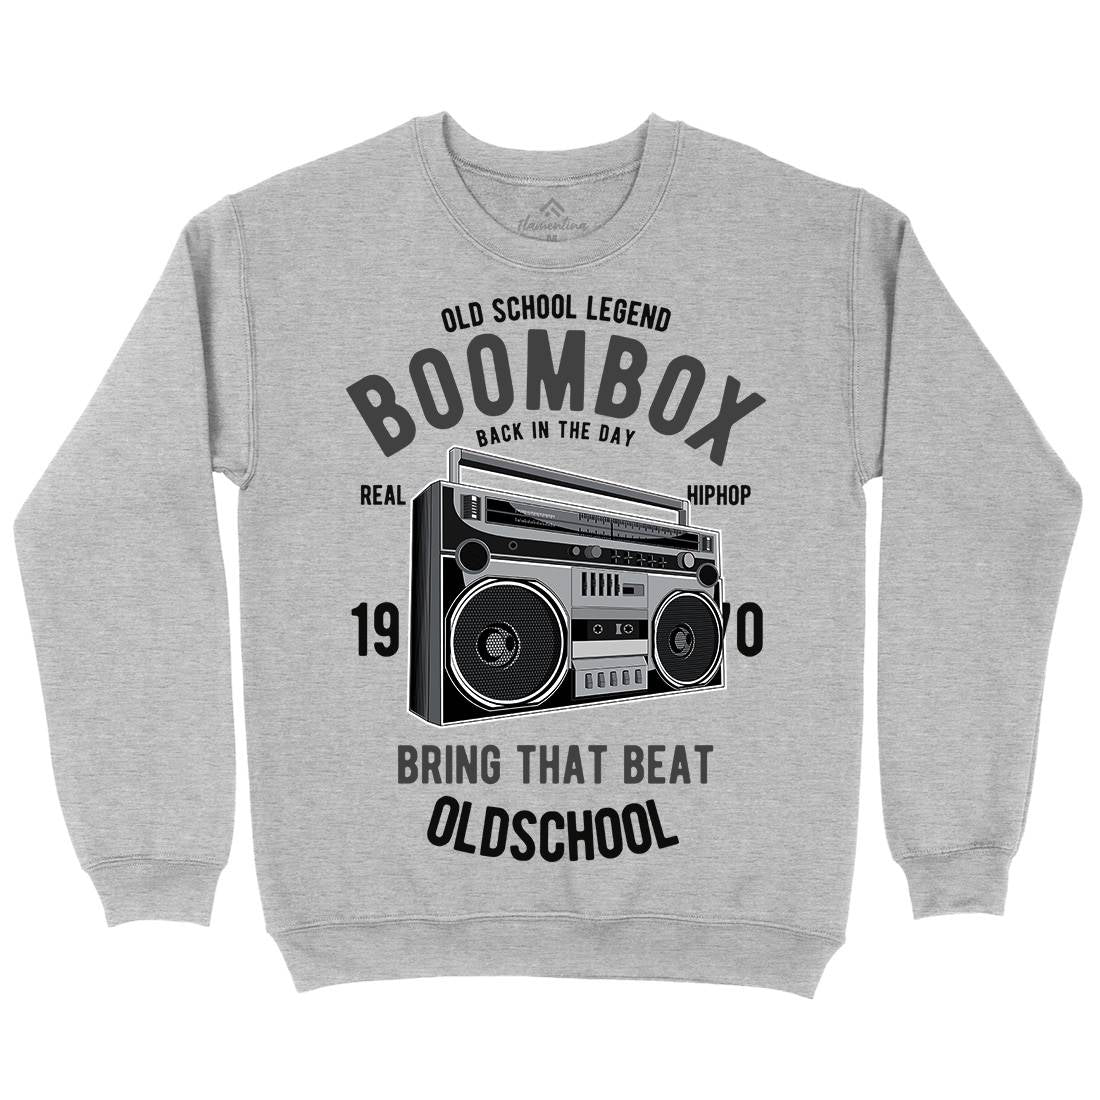 Boombox Kids Crew Neck Sweatshirt Music C319